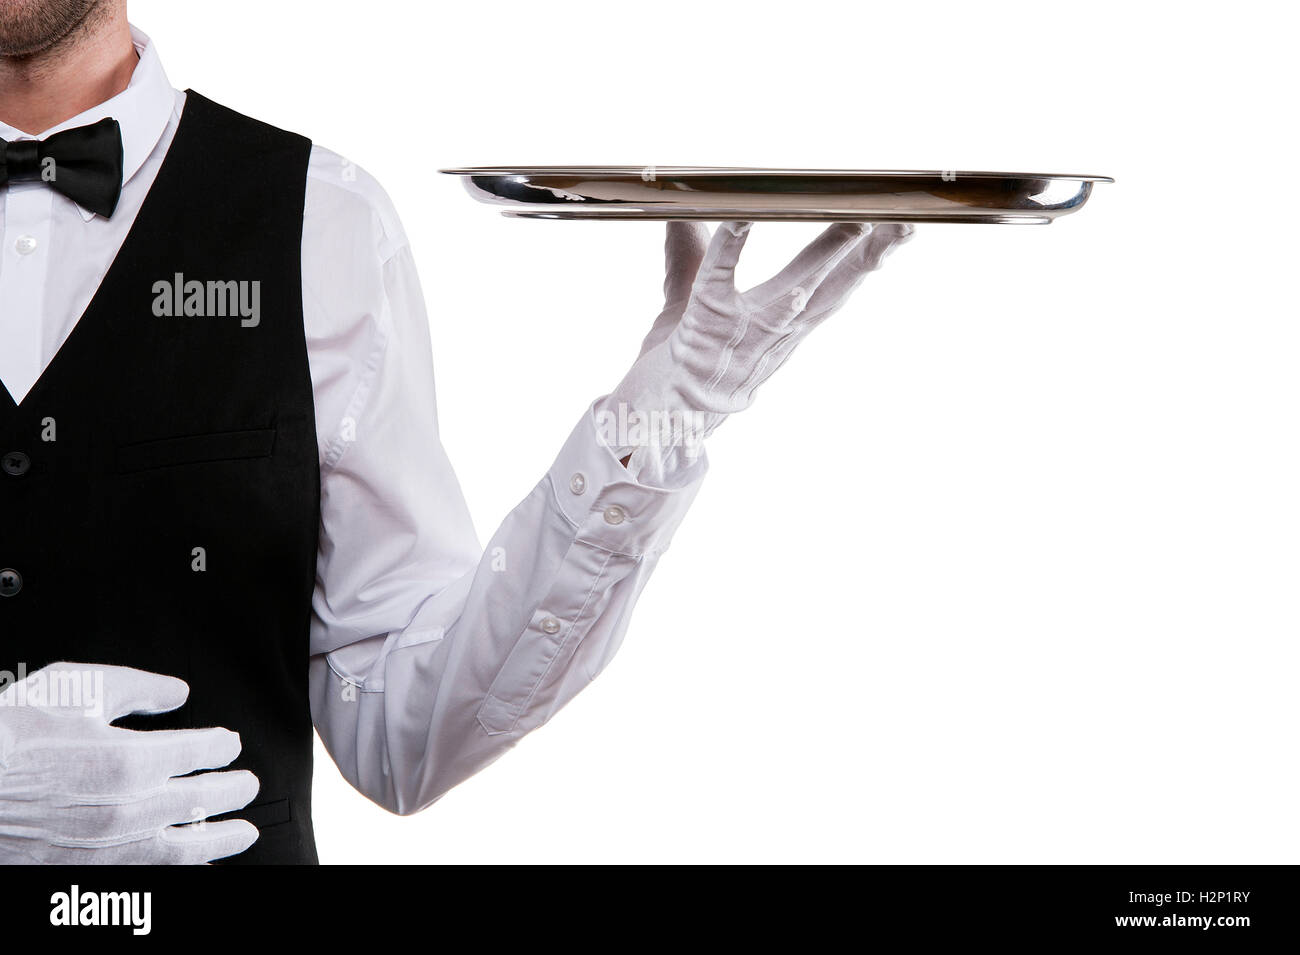 Waiter arm holding tray over white background. Stock Photo